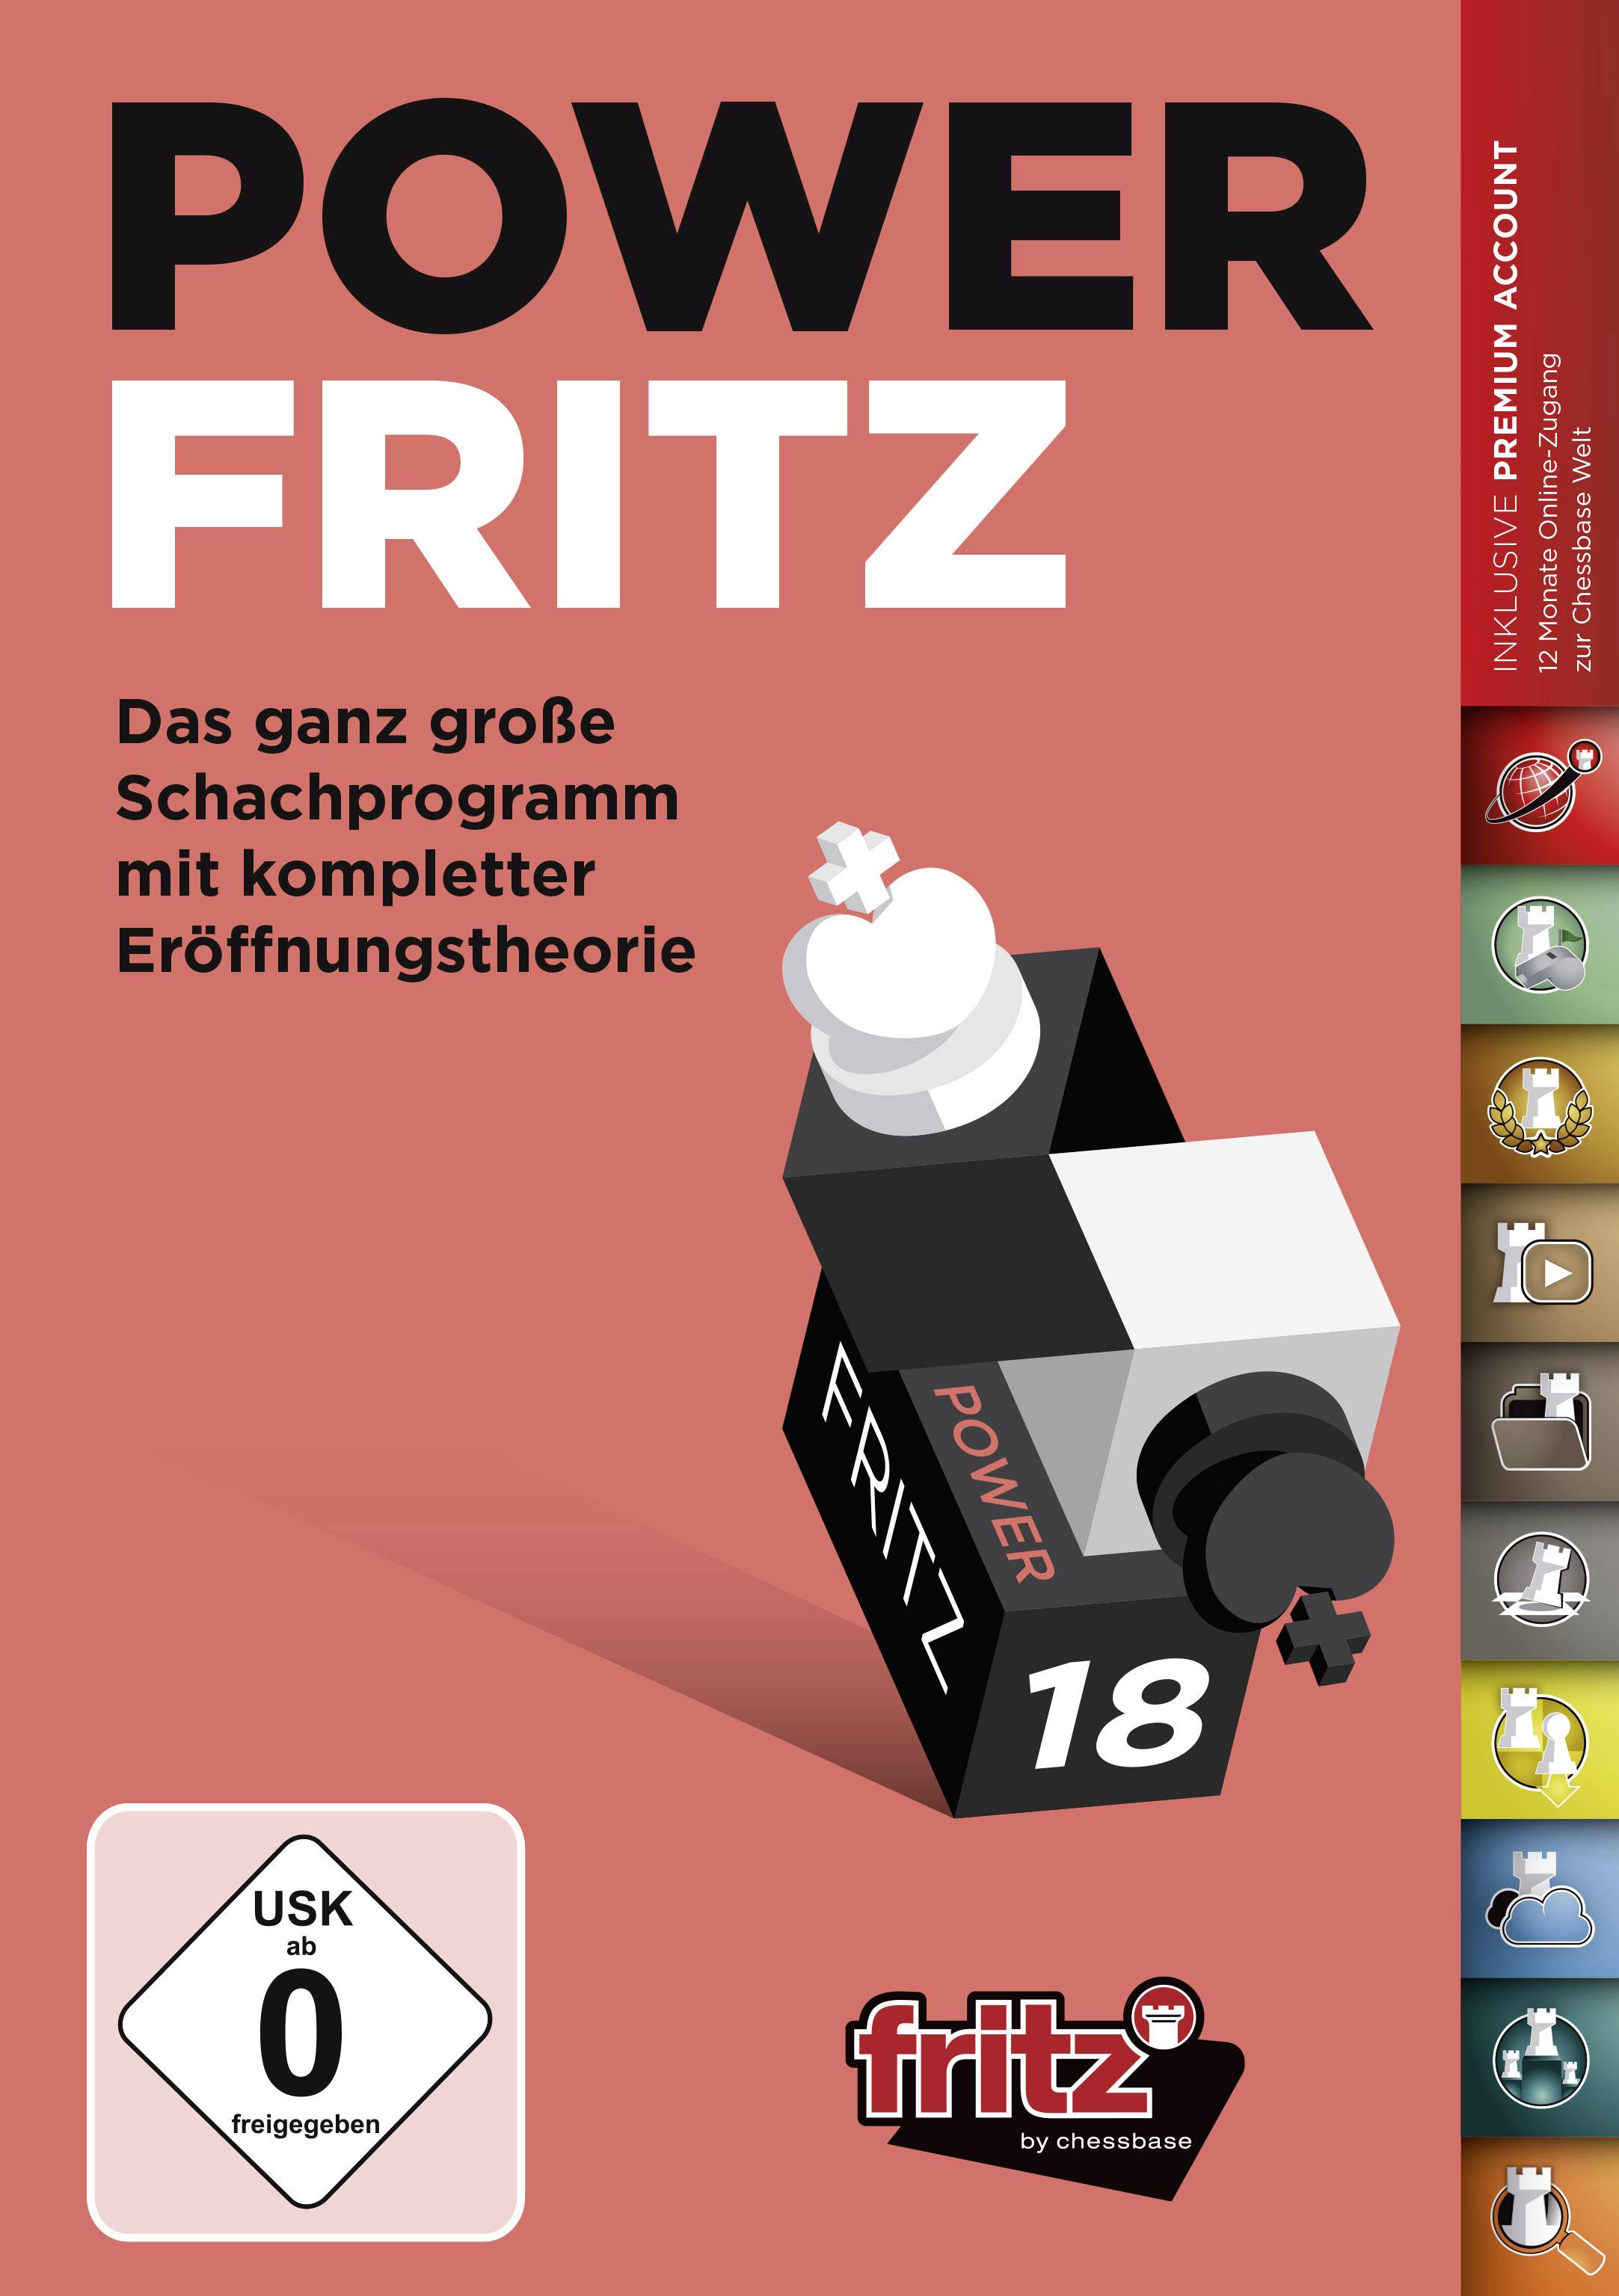 CHESSBASE Power Fritz 18 - Das ganz große Schachprogramm mit kompl. Eröffnungstheorie PC USK: 0